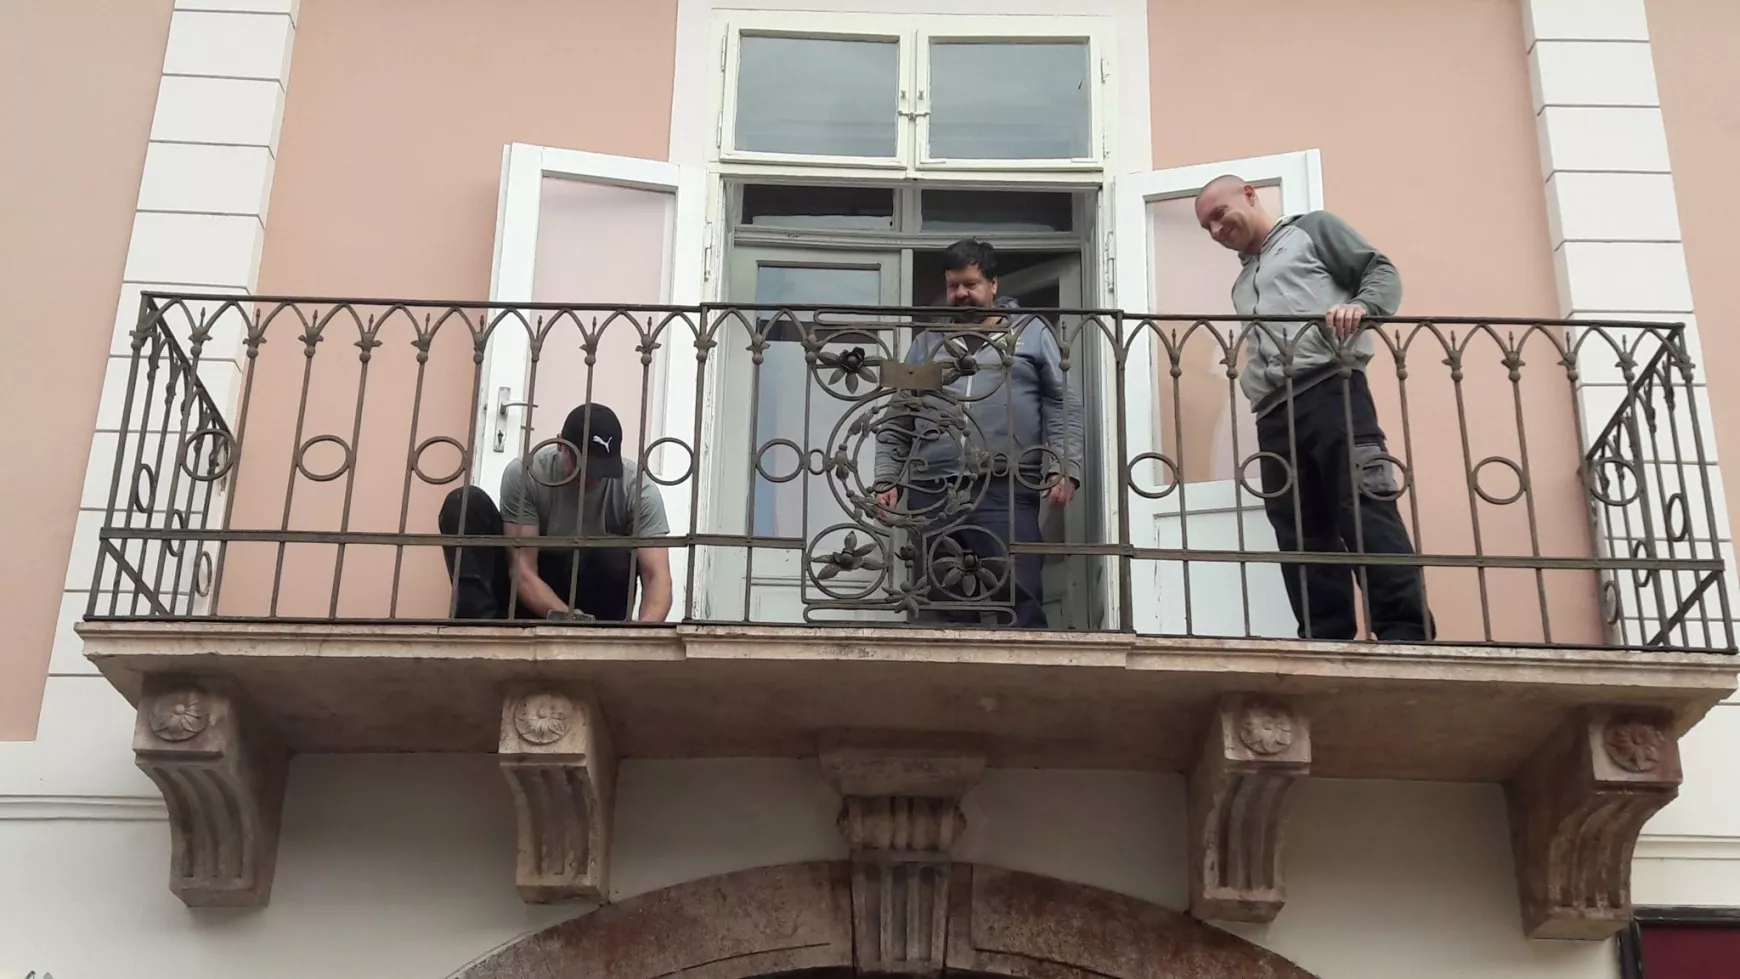 Újjávarázsolták a komáromi Zichy-palota erkélyének kovácsoltvas korlátját - KÉPEKKEL